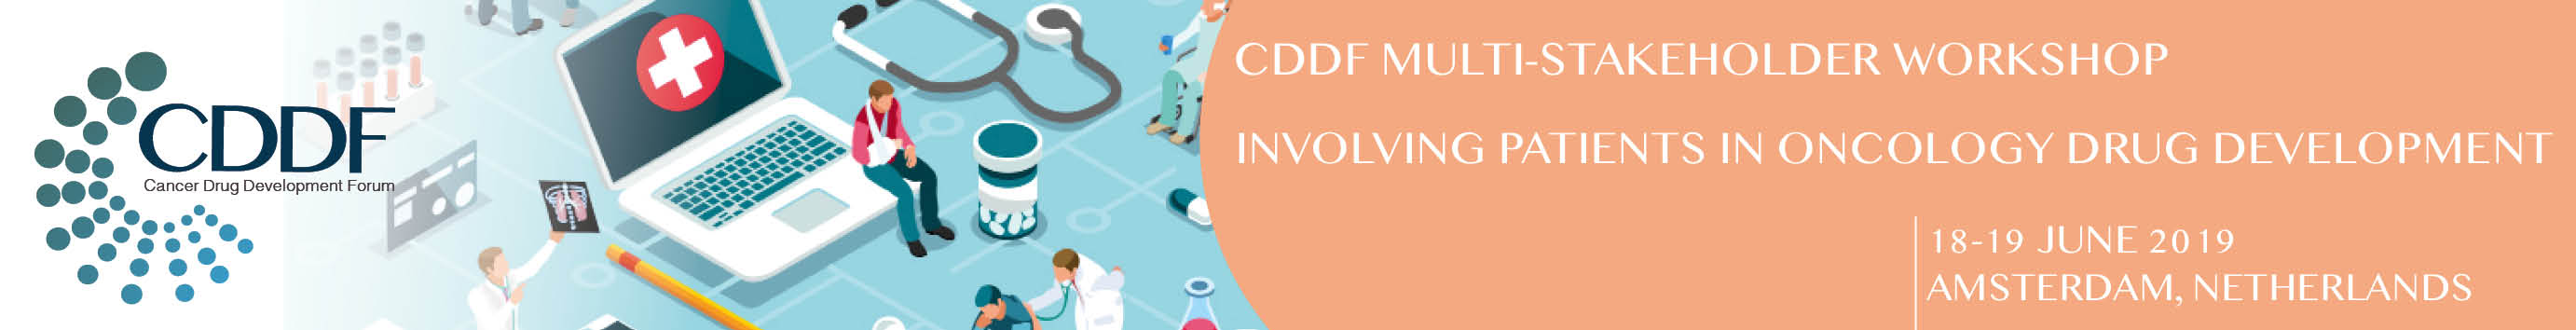 CDDF Multi-stakeholder Workshop on Involving Patients In Oncology Drug Developmen, Amsterdam, Noord-Holland, Netherlands